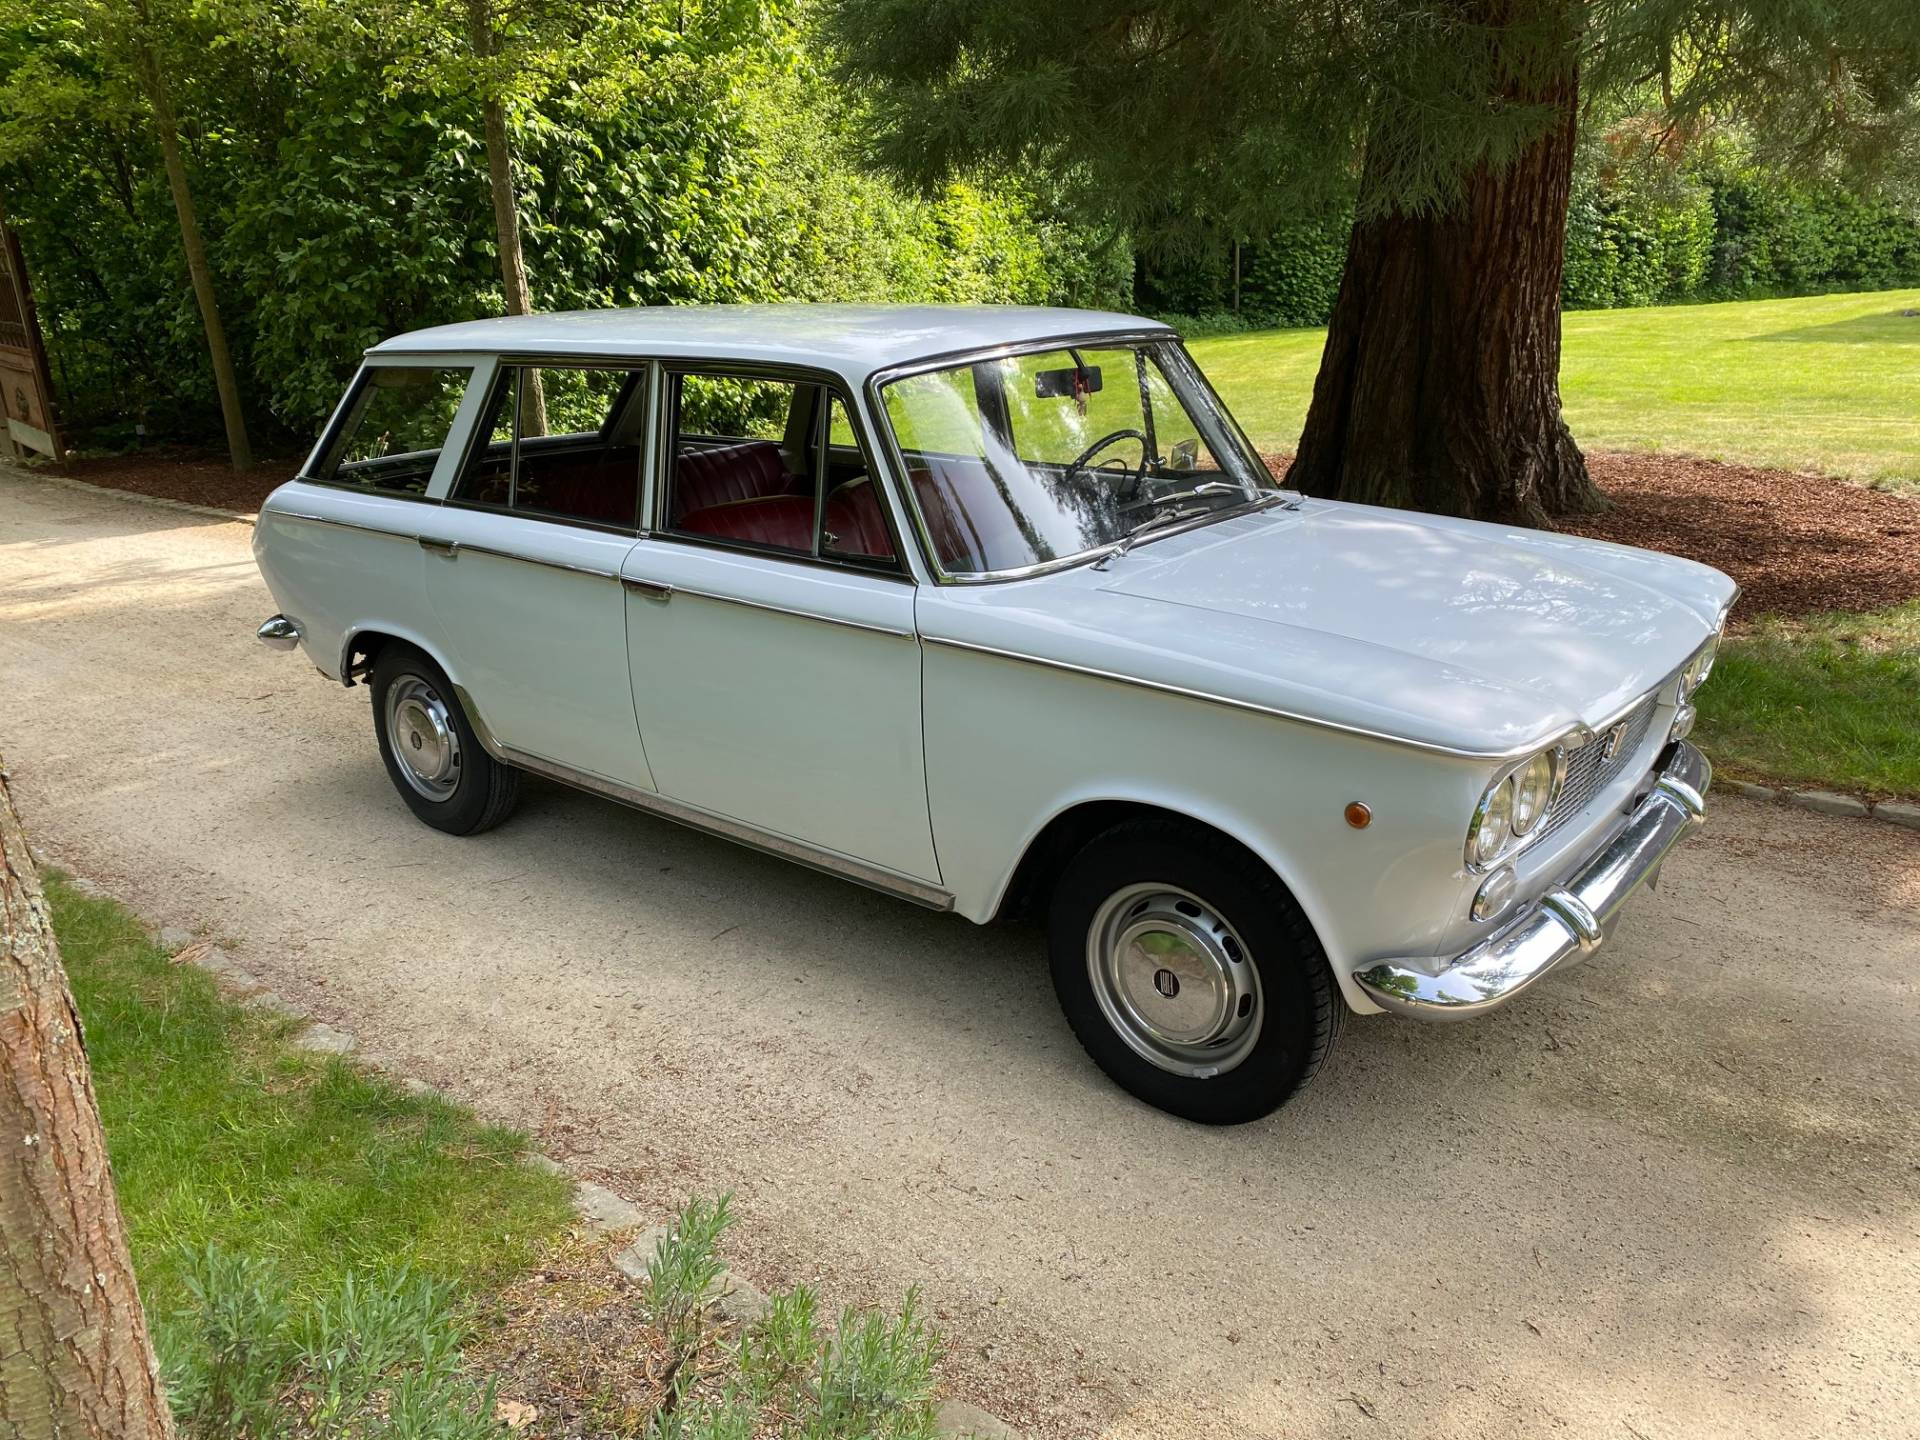 FIAT 1500 Familiare (1966) für 11.850 EUR kaufen